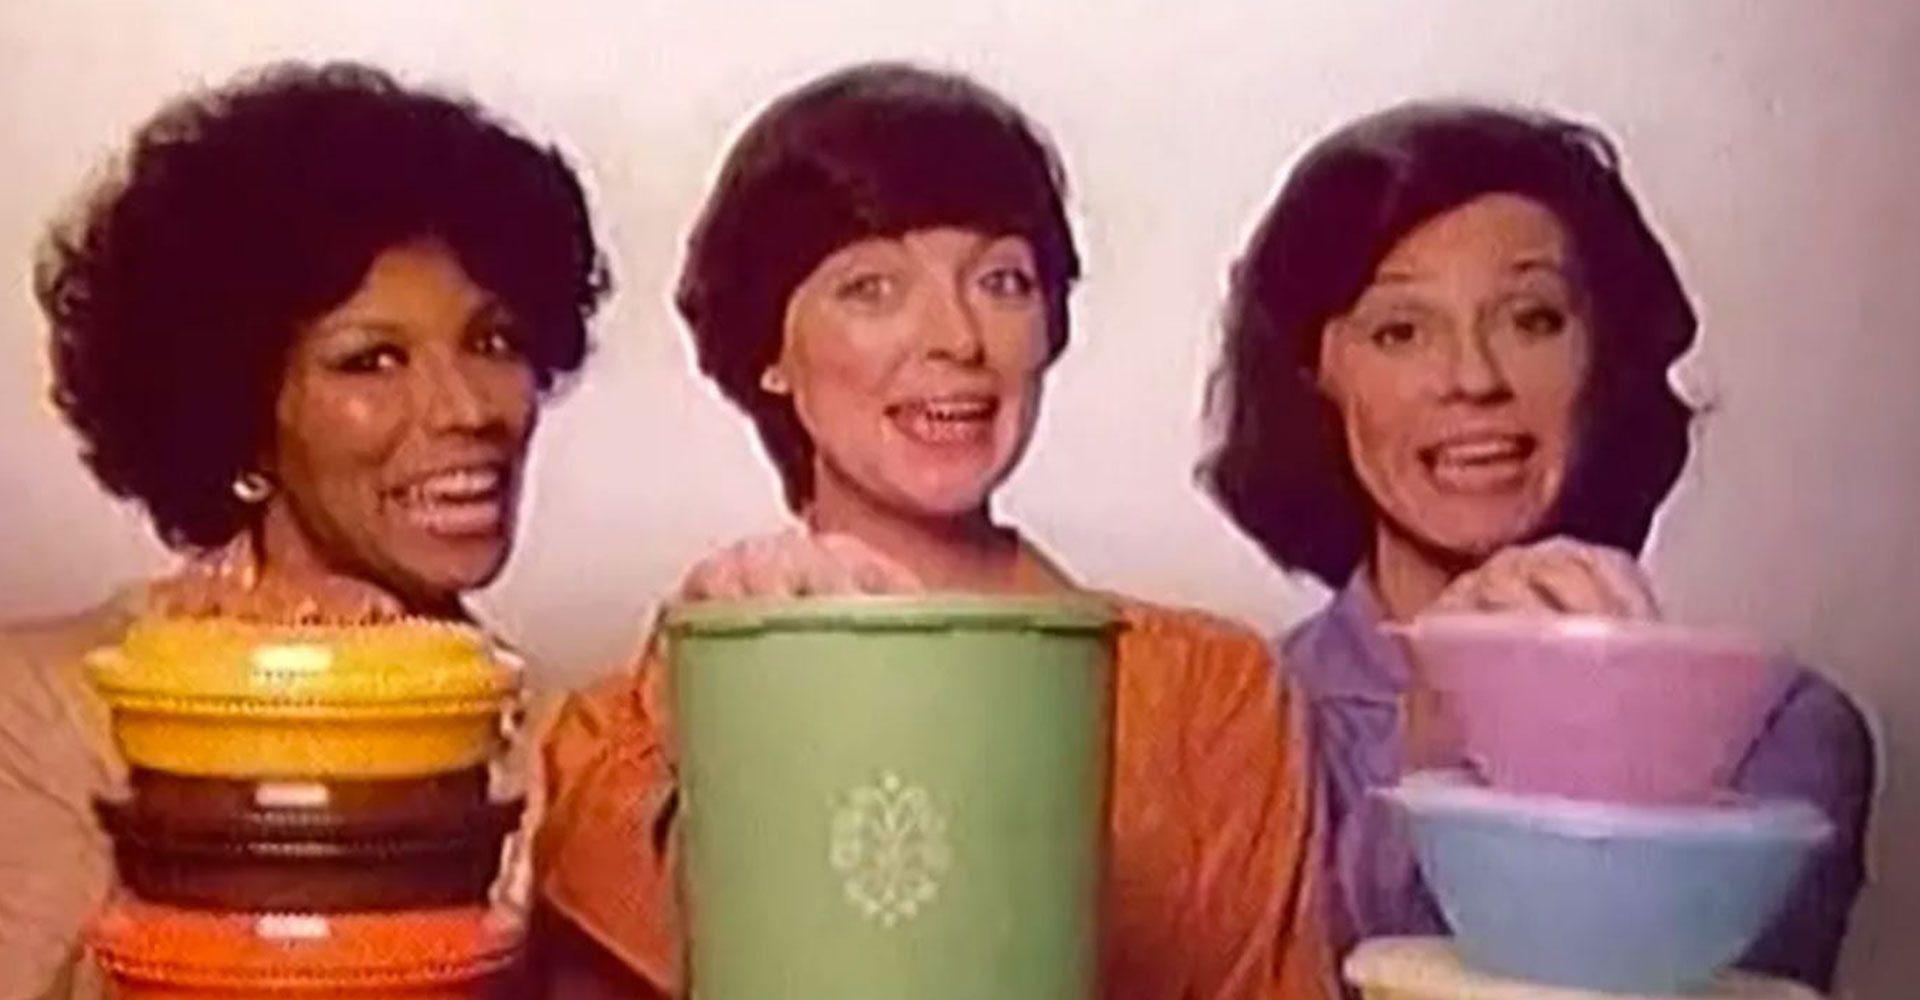 women selling Tupperware 1980s